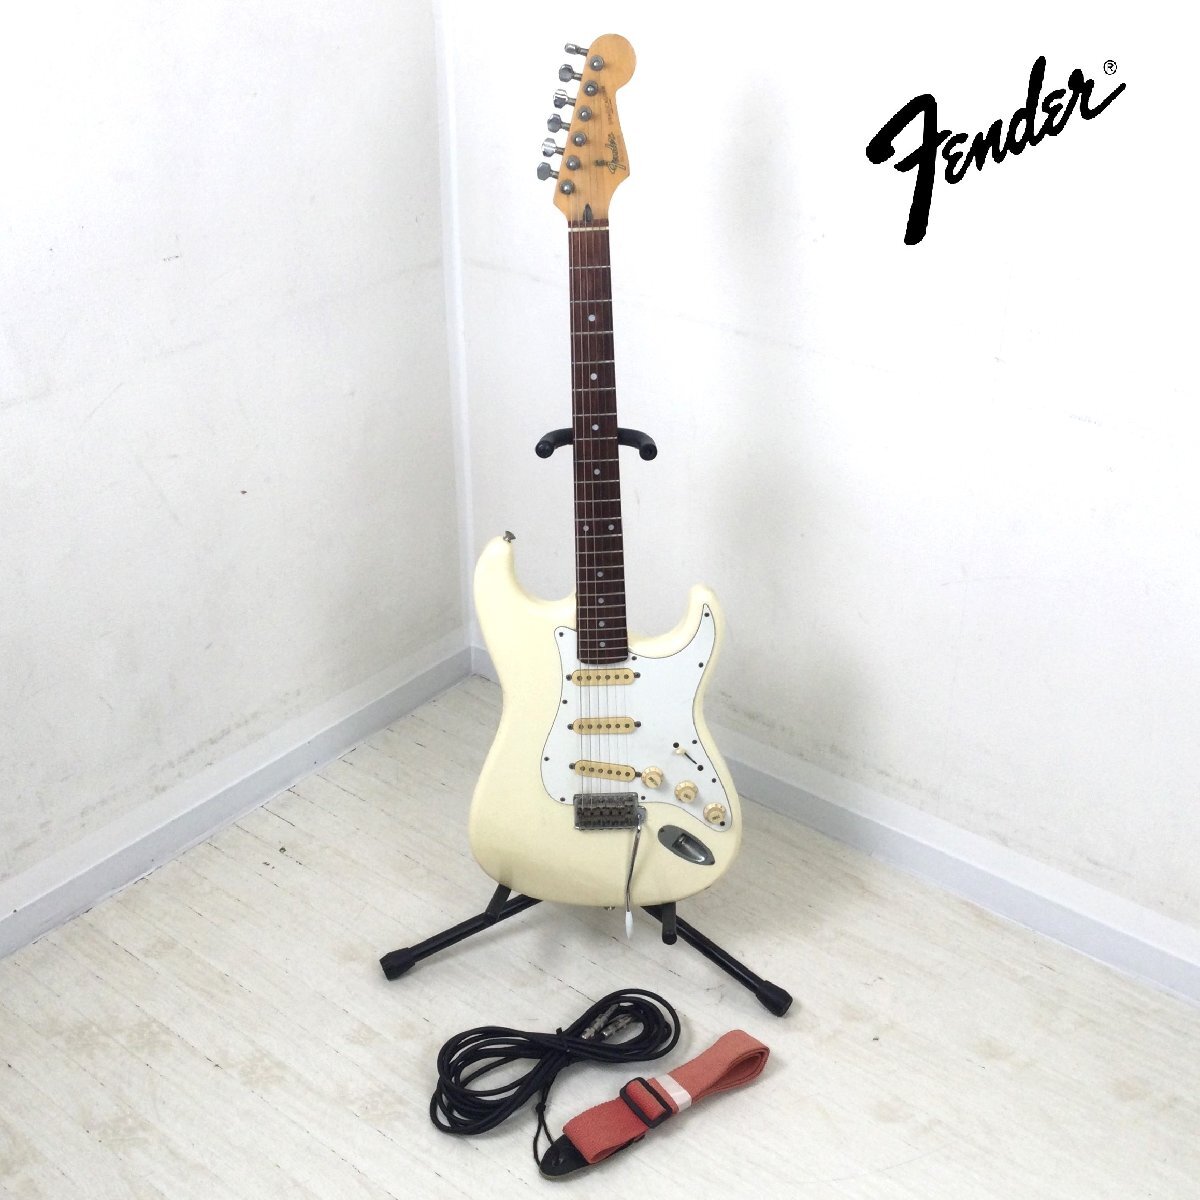 1203 Fender Japan フェンダー STRATOCASTER エレキギター ホワイト 弦楽器の画像1